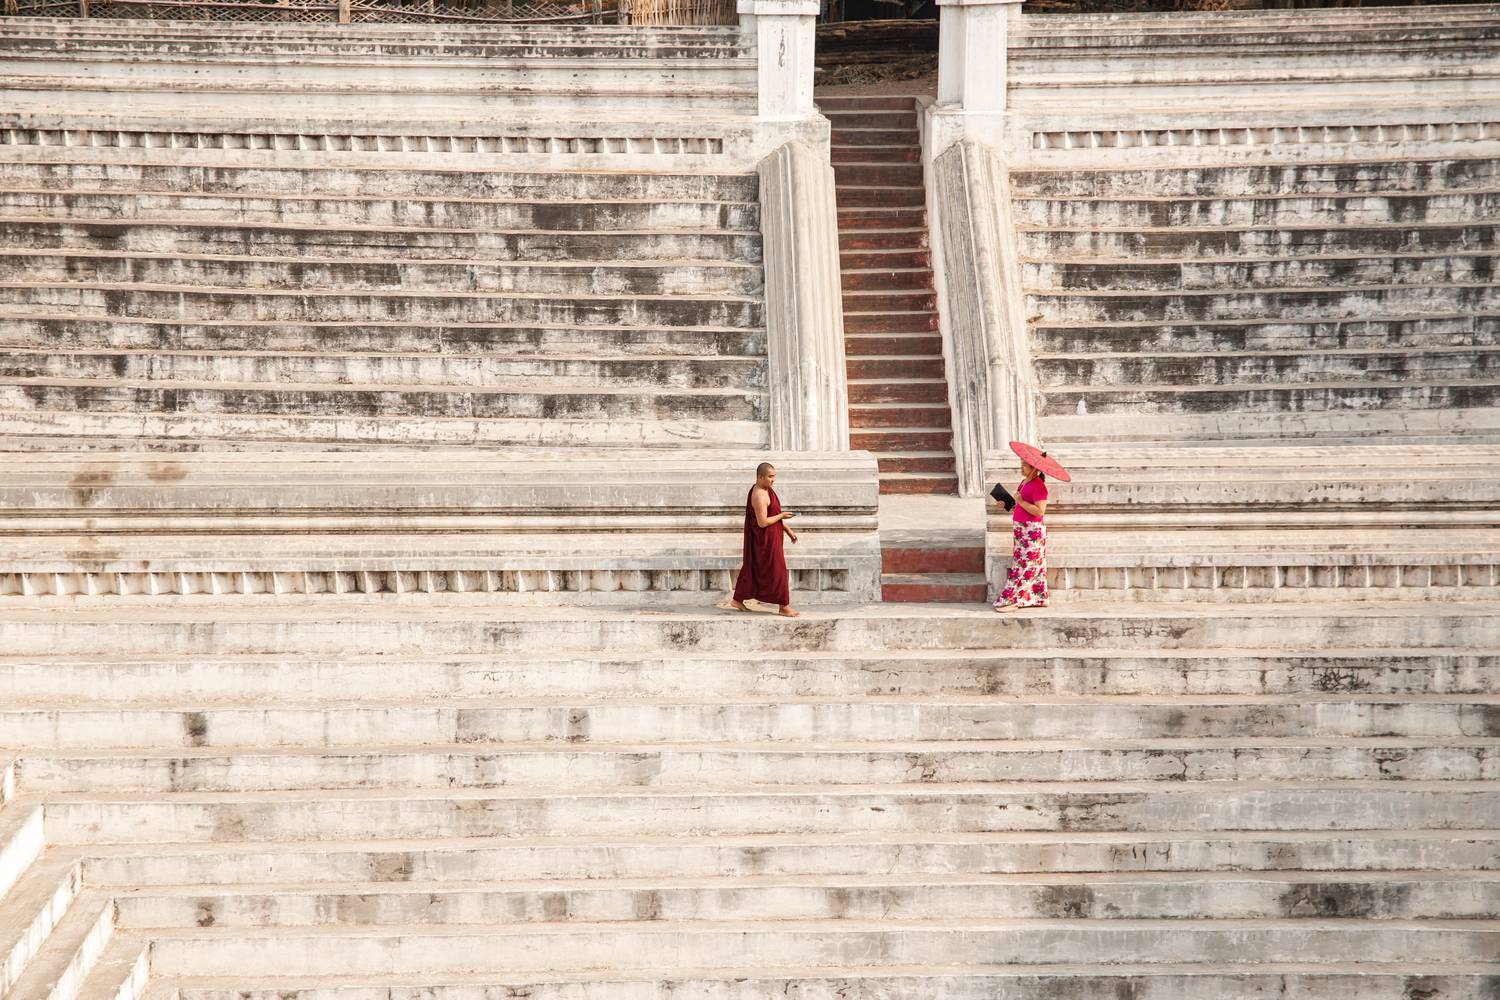 Tempel in Mandalay, Myanmar (Burma) de Miro May